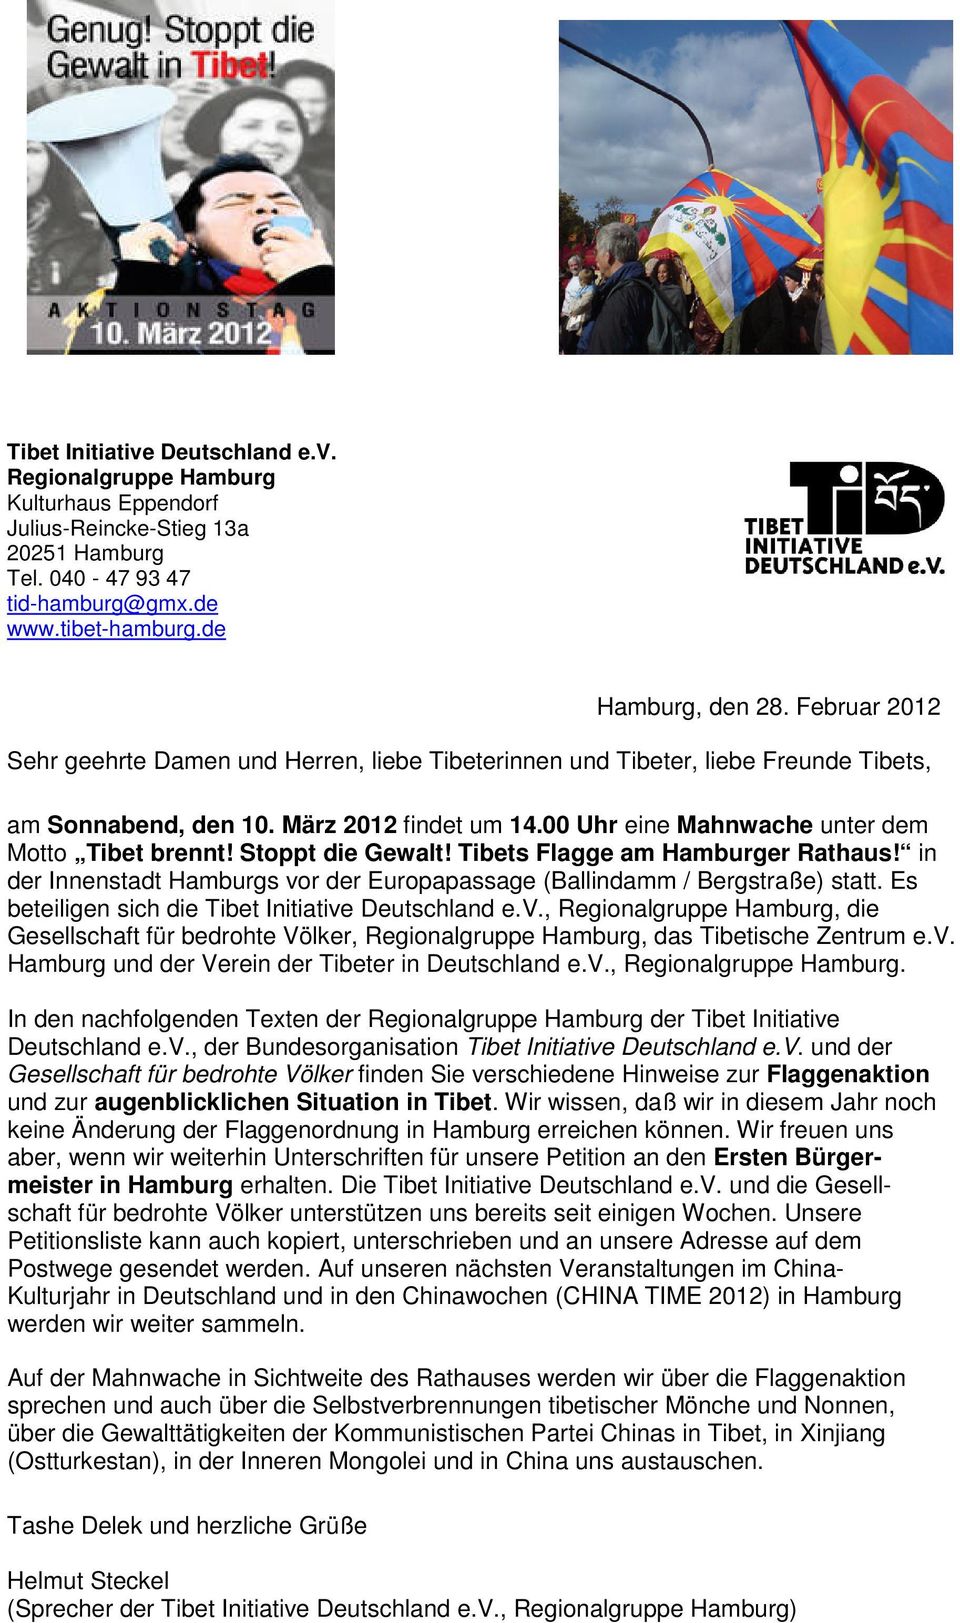 Stoppt die Gewalt! Tibets Flagge am Hamburger Rathaus! in der Innenstadt Hamburgs vor der Europapassage (Ballindamm / Bergstraße) statt. Es beteiligen sich die Tibet Initiative Deutschland e.v., Regionalgruppe Hamburg, die Gesellschaft für bedrohte Völker, Regionalgruppe Hamburg, das Tibetische Zentrum e.